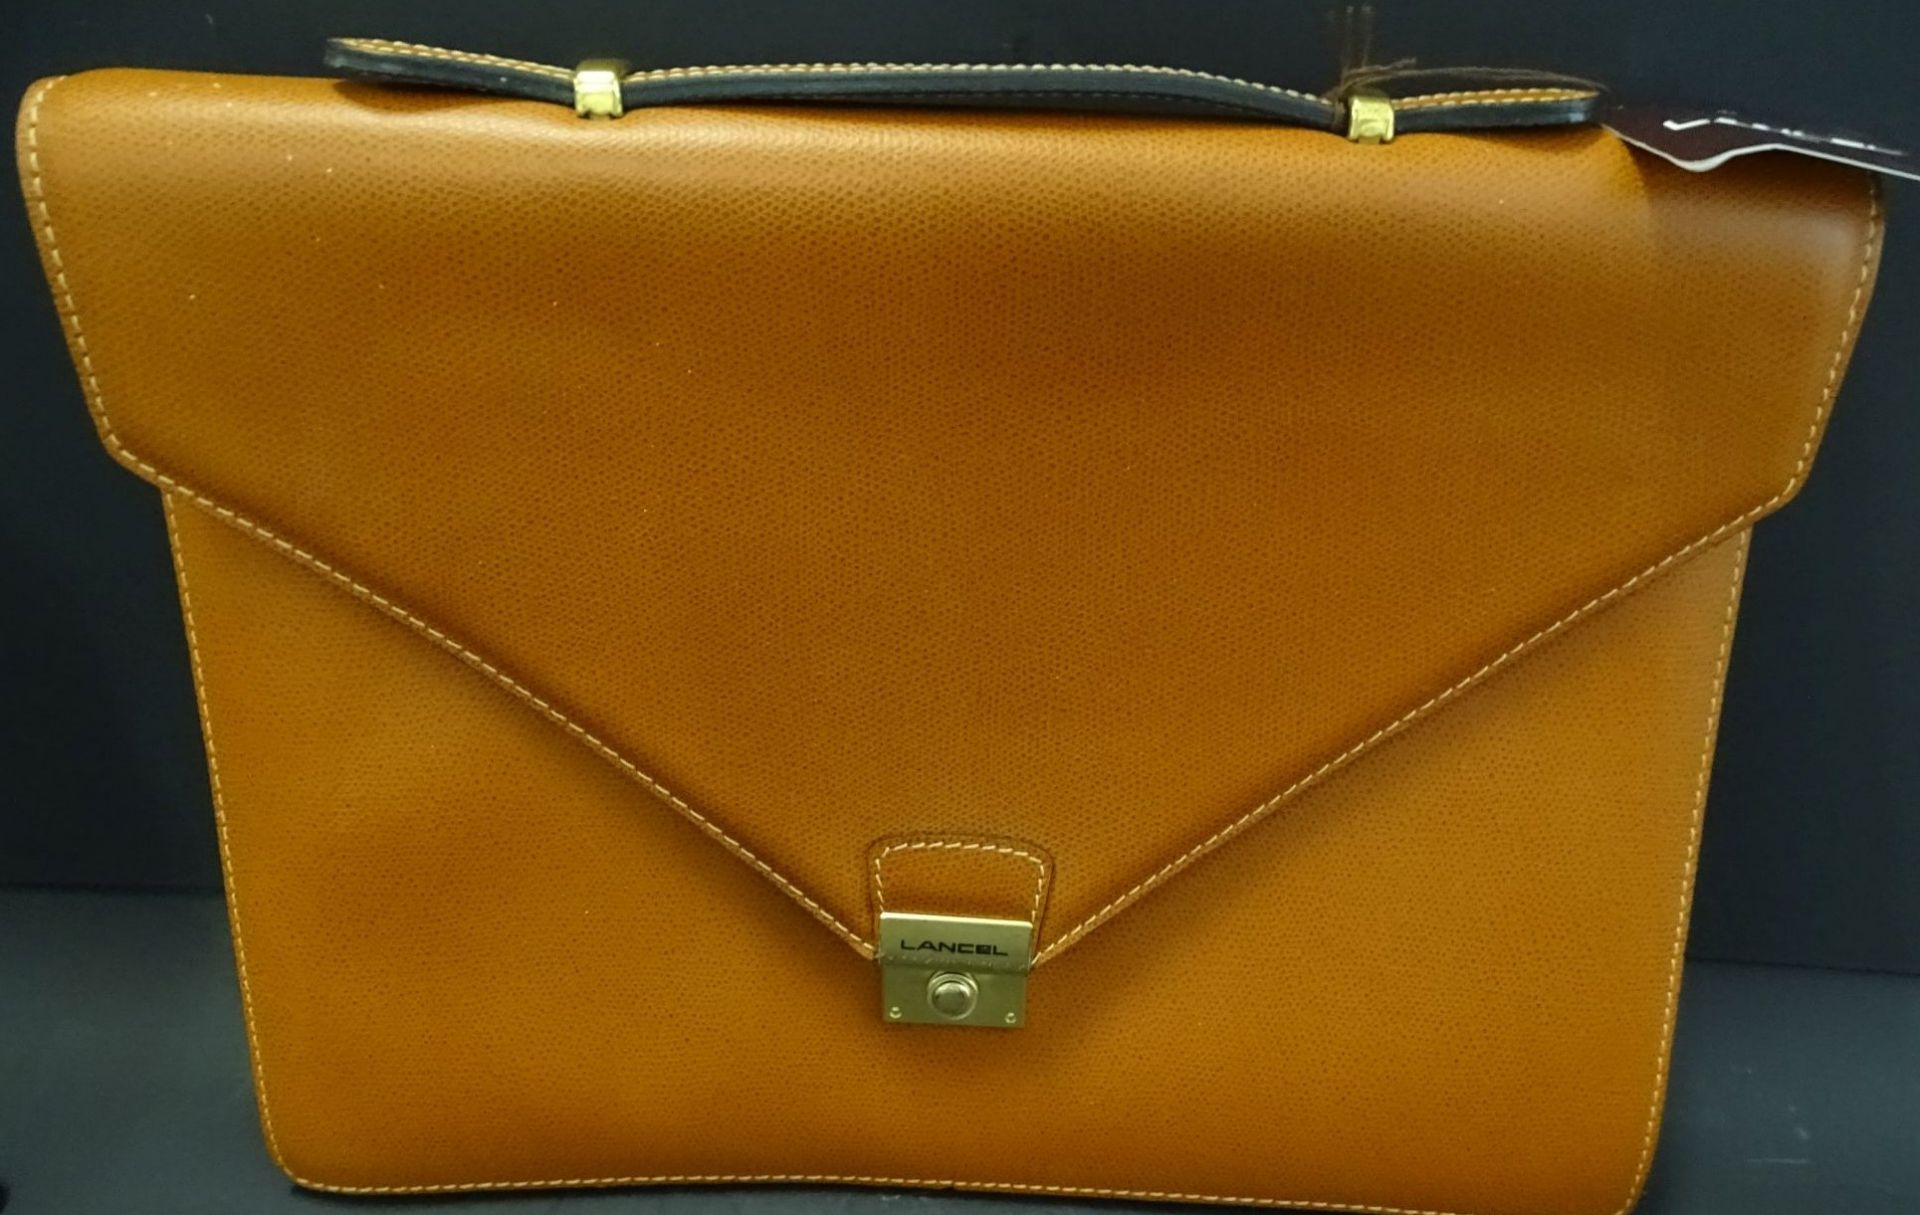 Leder-Handtasche "Lancel"gut erhalten mit Lagerungsschäde - Bild 8 aus 8